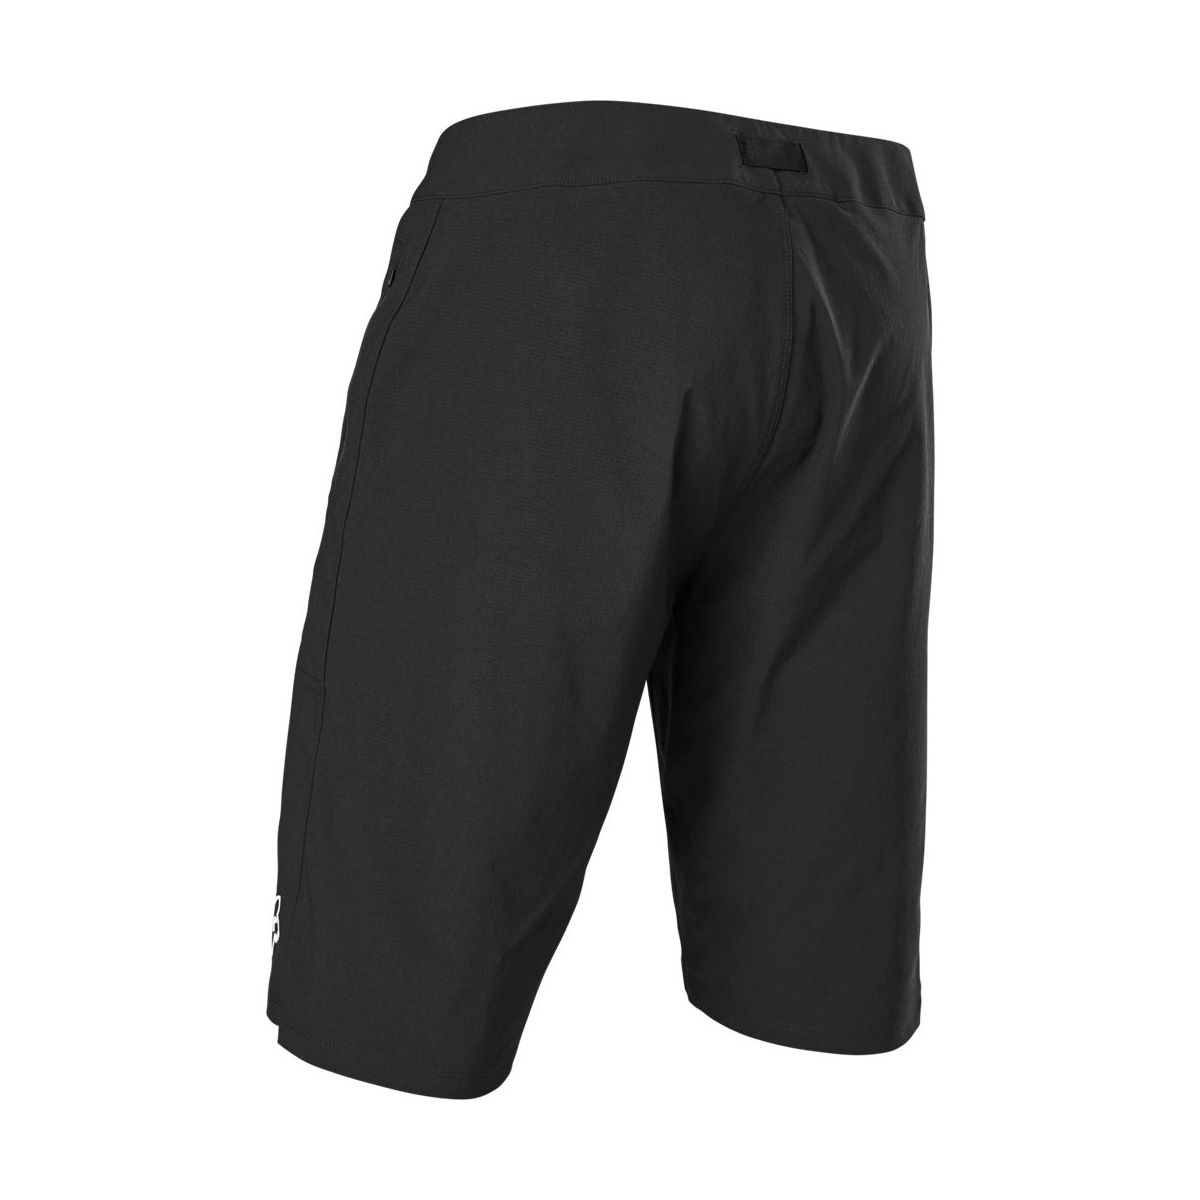 Pantalón corto Enduro MTB Fox Ranger con badana color negro